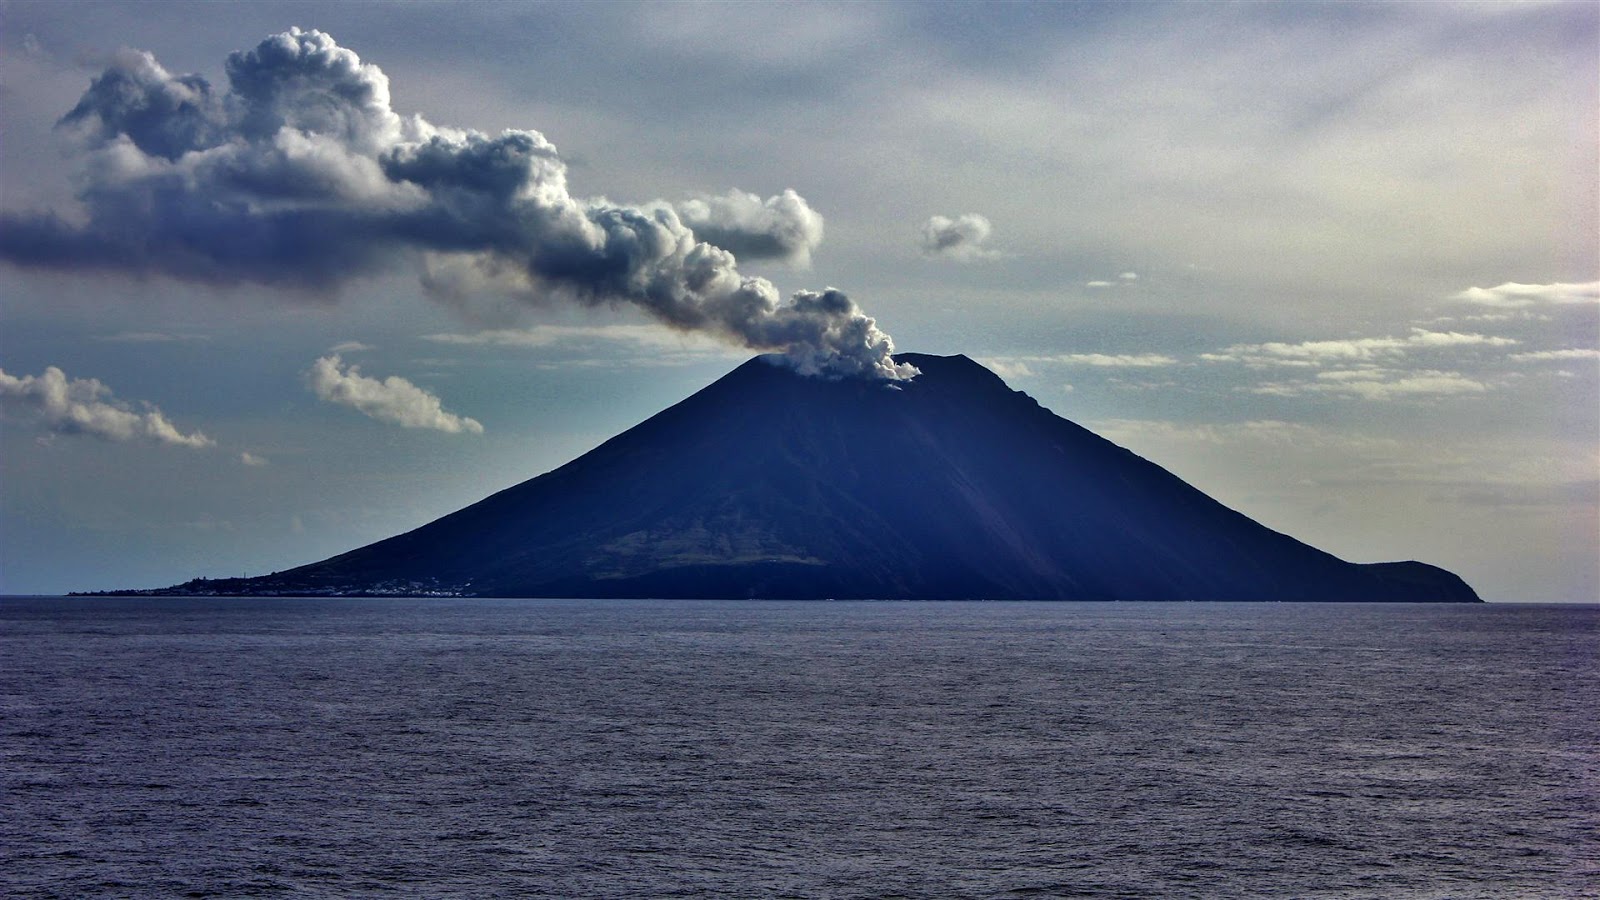 Volcano island. Стромболи вулкан. Остров Стромболи. Остров вулкан Стромболи. Вулкан Стромболи в Италии.